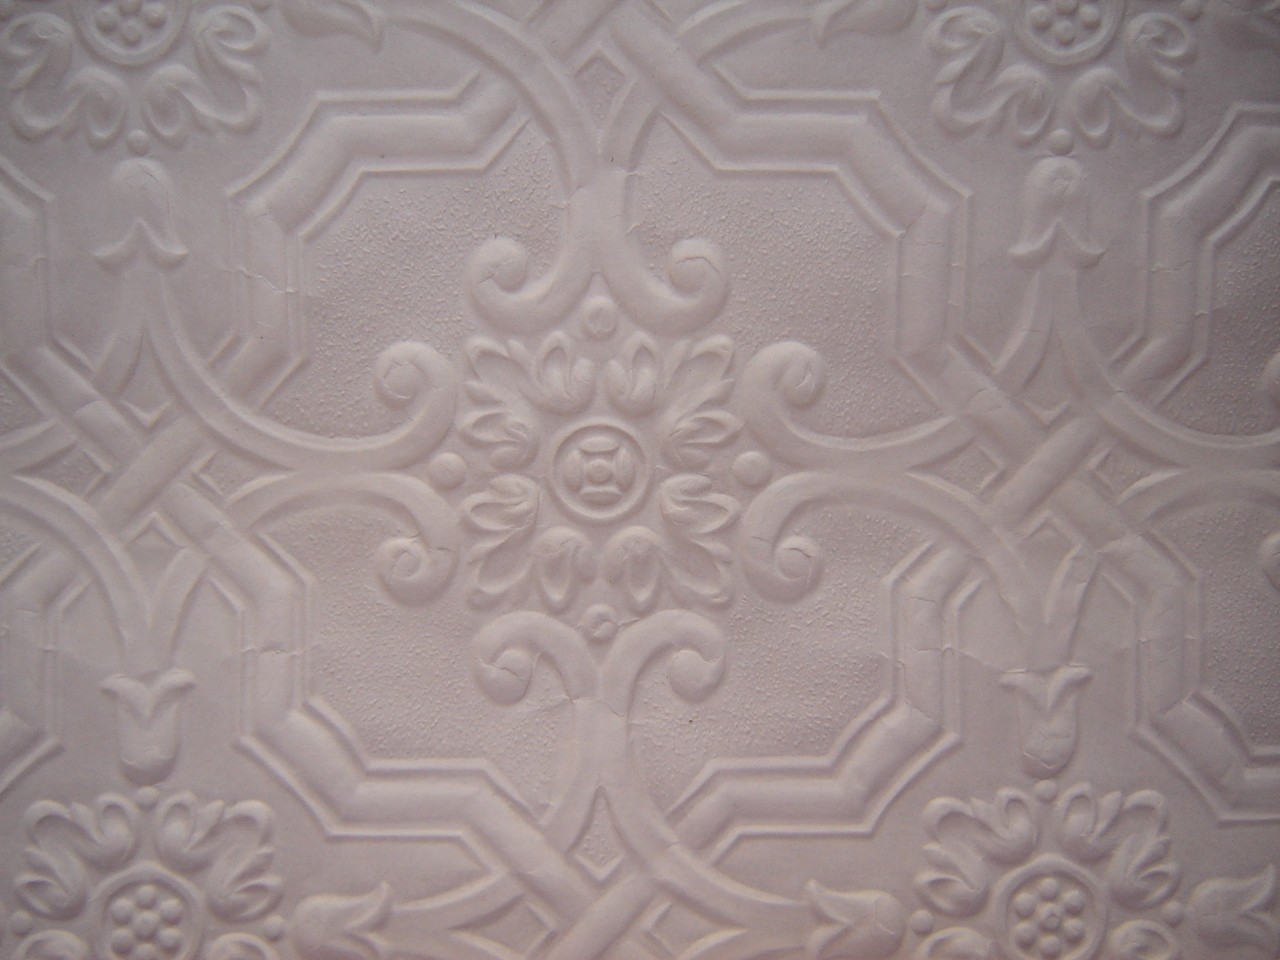 Ceiling Tile Wallpaper Paintable Embossed Yd From Wendysvintageshop